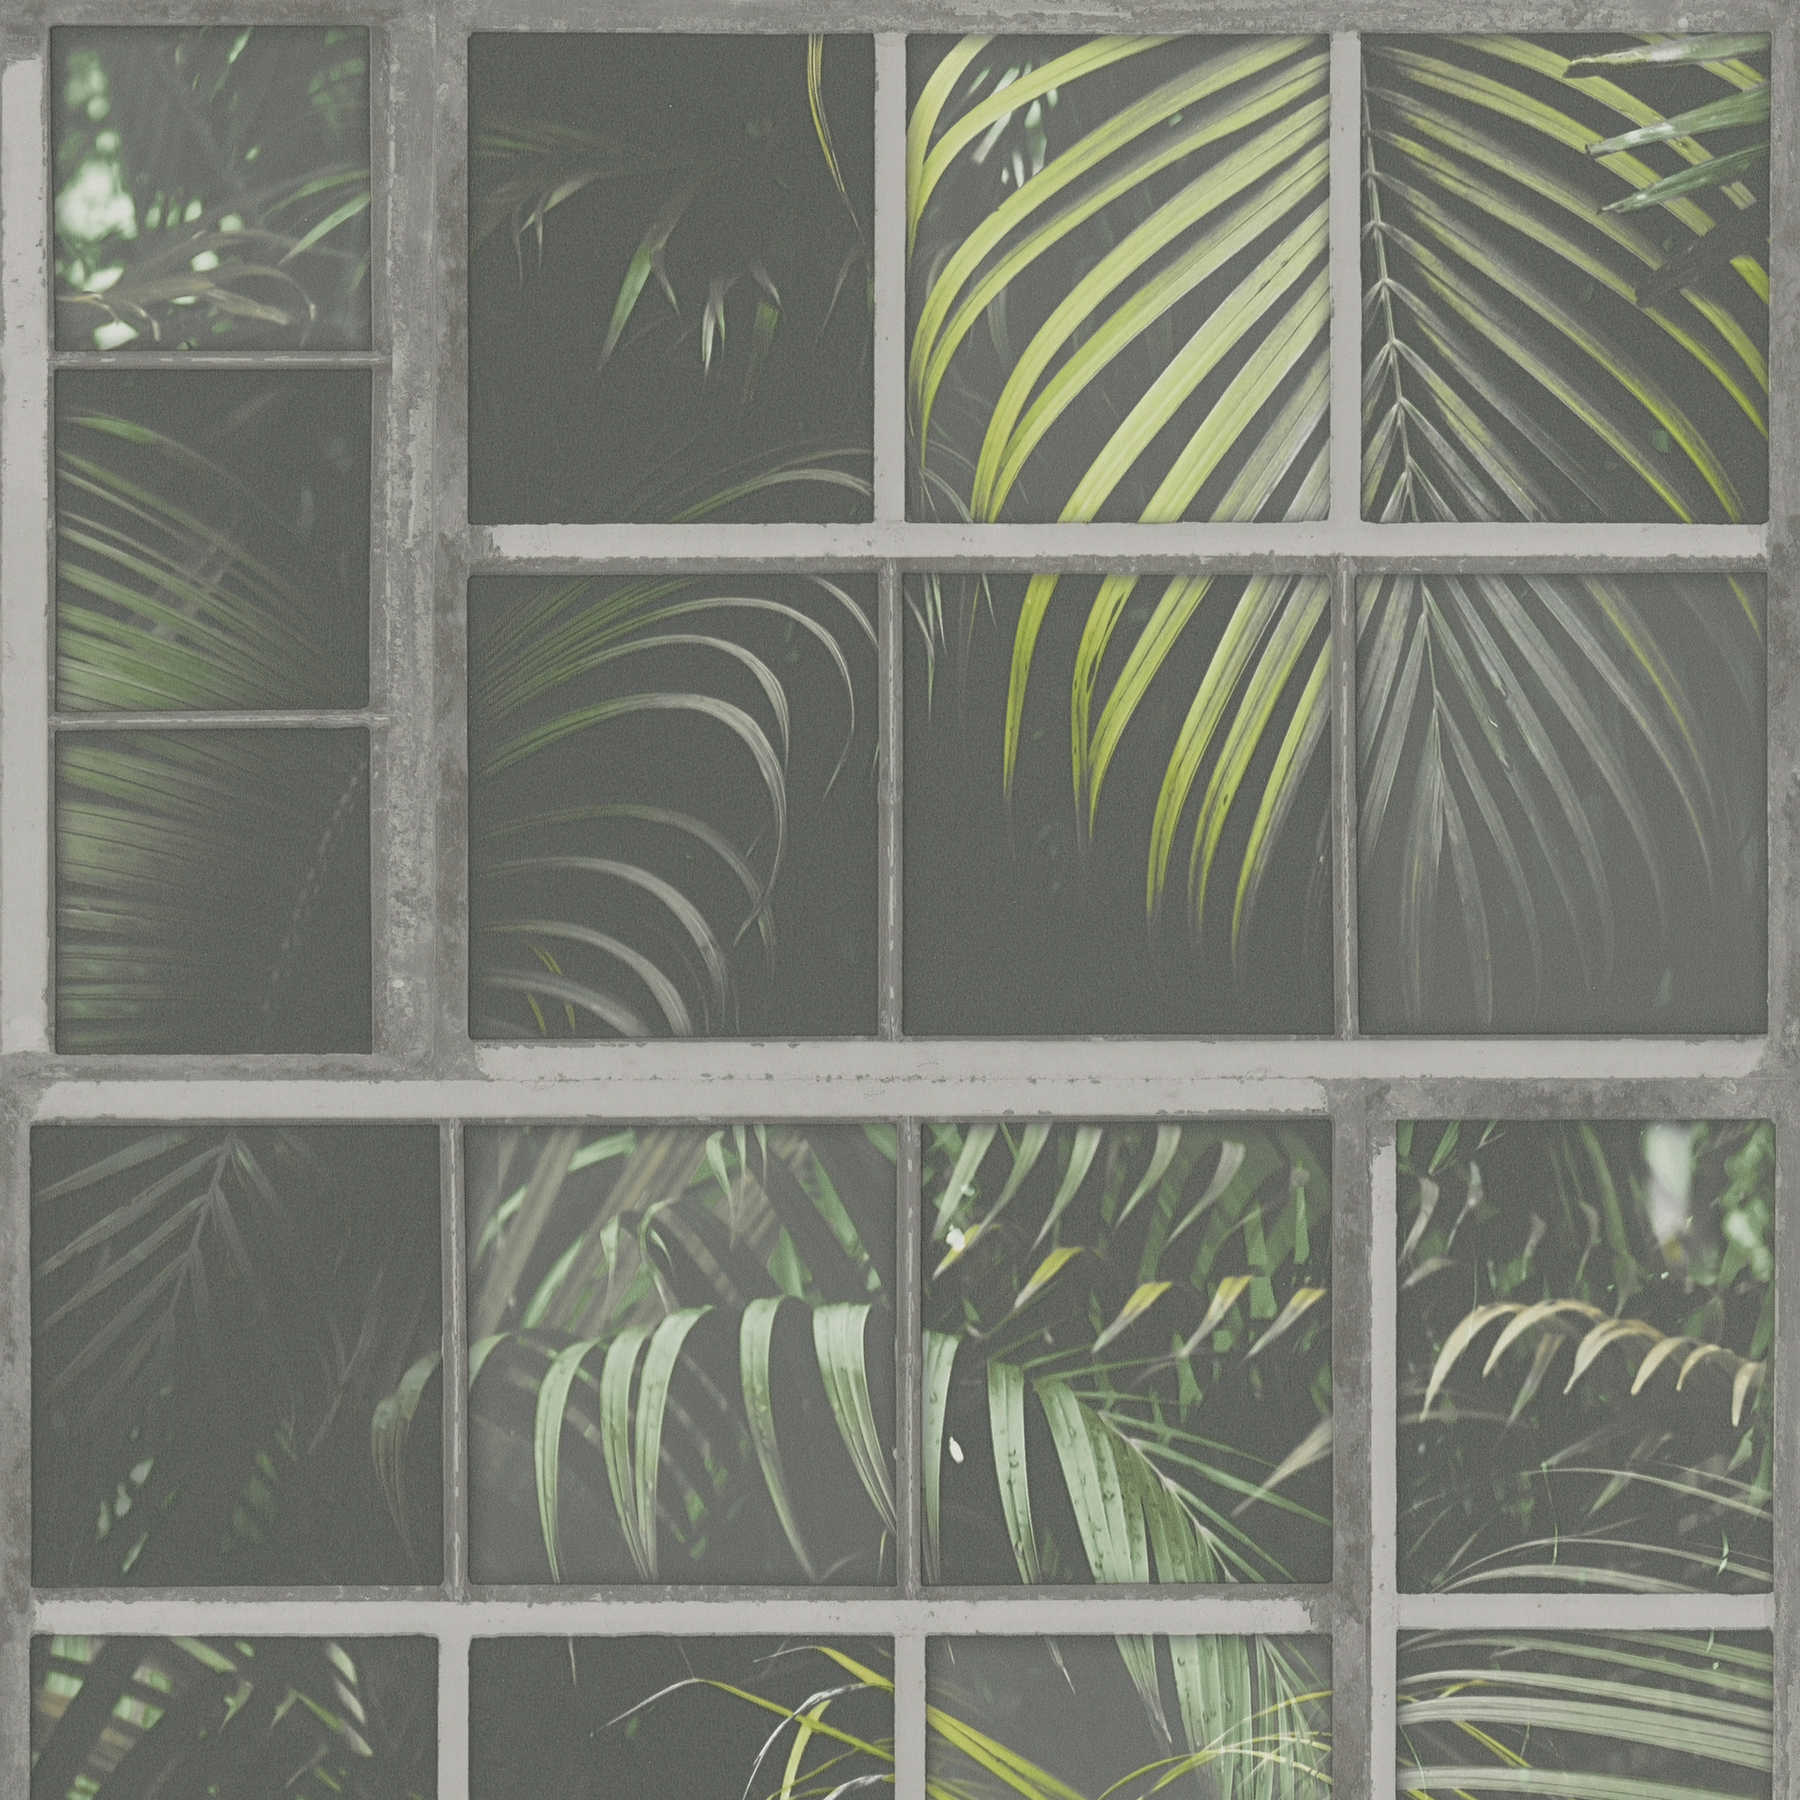 Behang raammotief, industriële look & varens - grijs, groen, zwart
